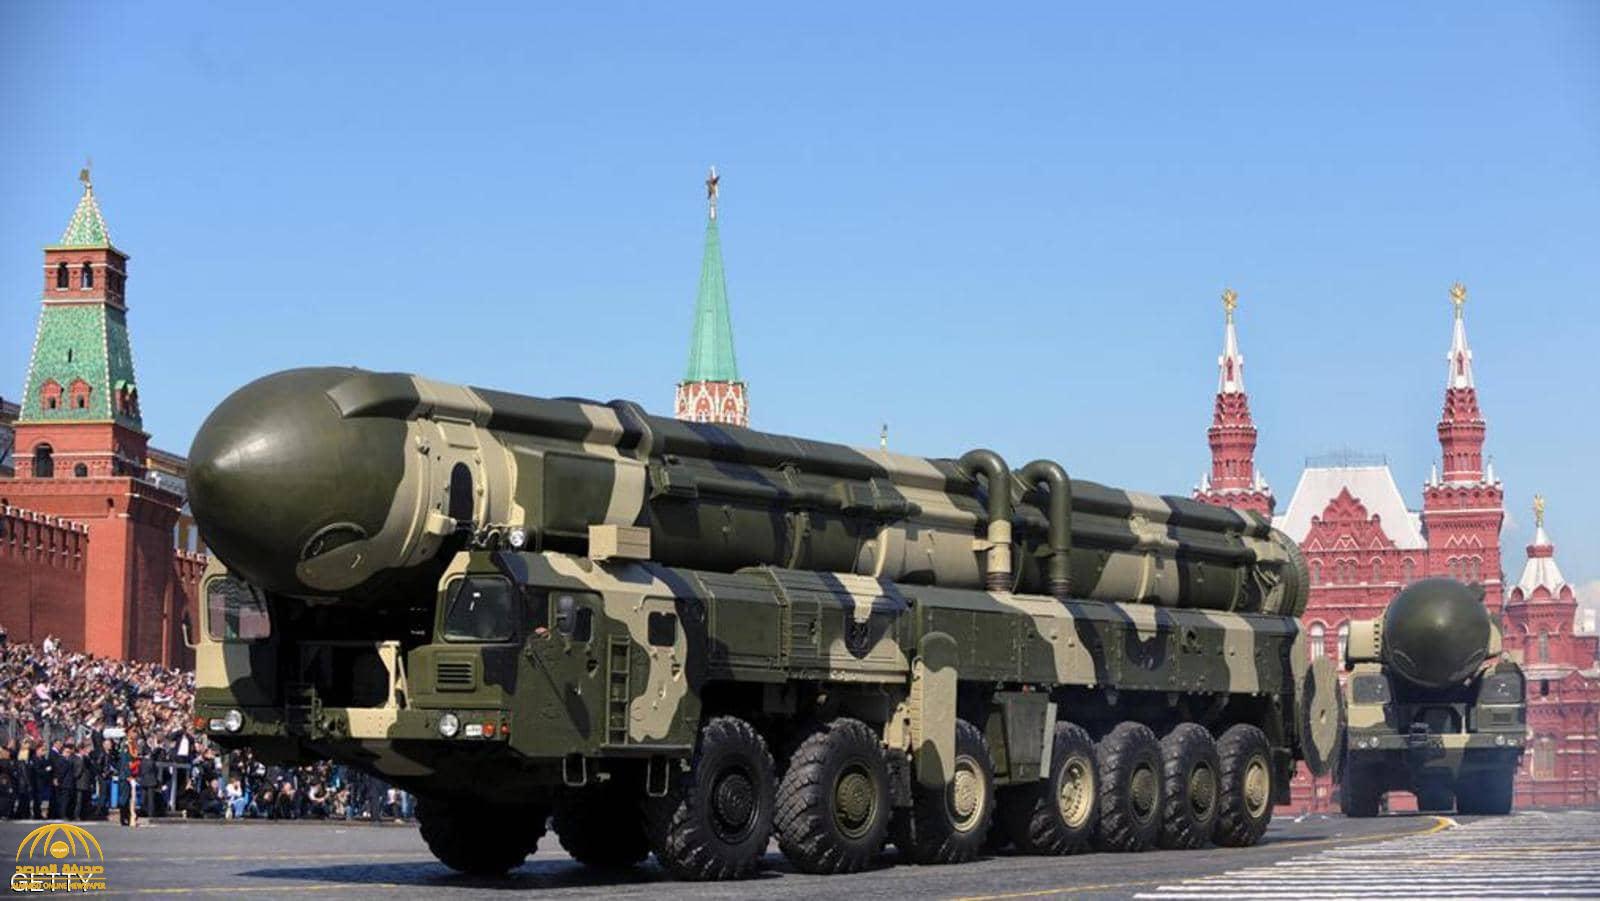 وزارة الدفاع الأميركية تعلق بعد إعلان روسيا عن  مواصفات "الصاروخ الخارق"